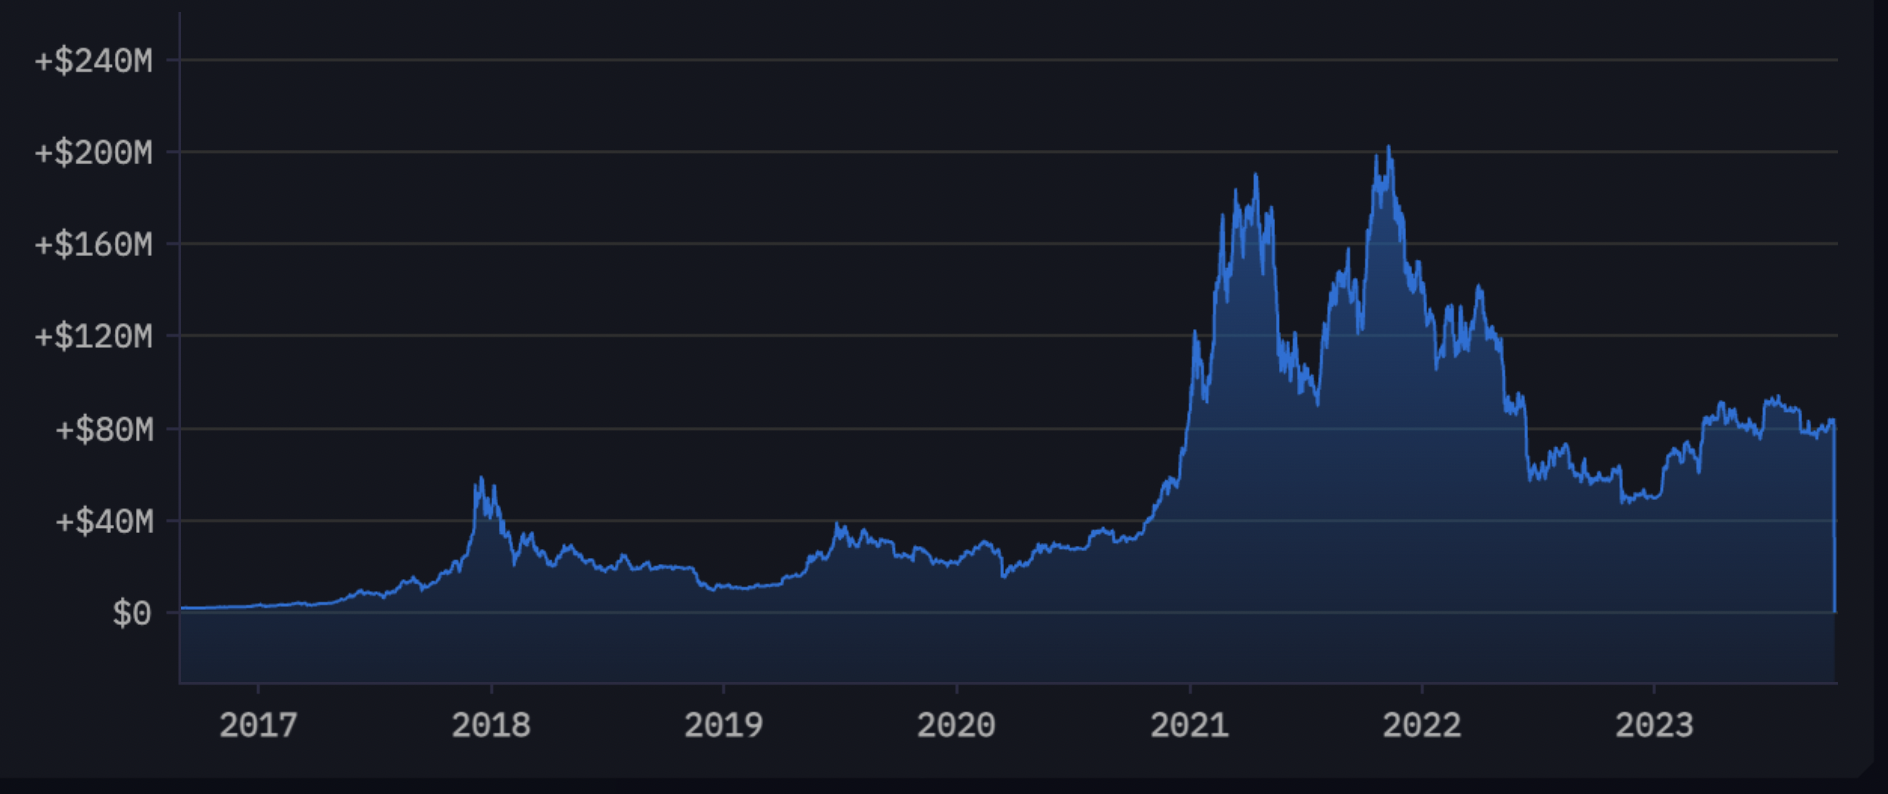 Bitcoin Whale mută brusc 3,000 BTC în valoare de peste 83,000,000 USD după șase ani de repaus: date în lanț - The Daily Hodl